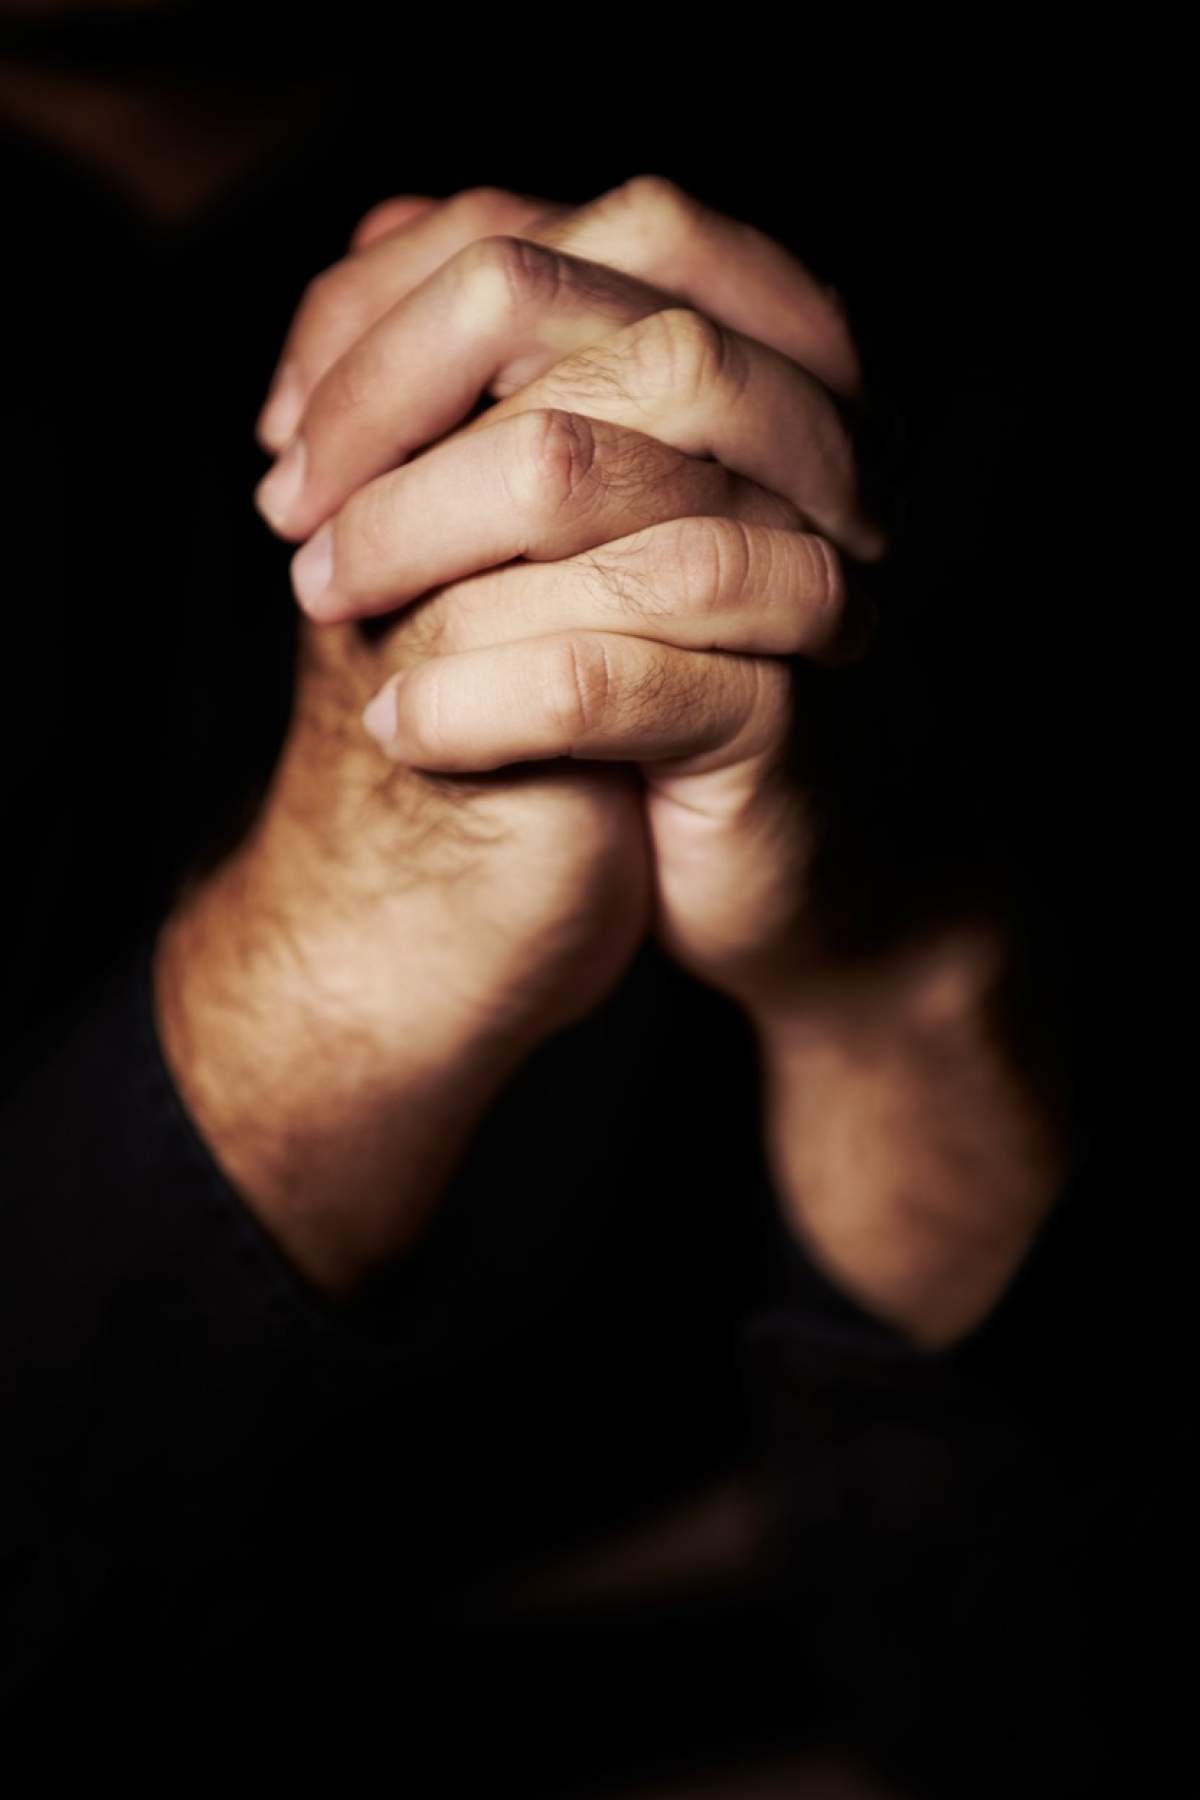 Să te rogi din greu pentru mântuire. Mâinile strânse în rugăciune.